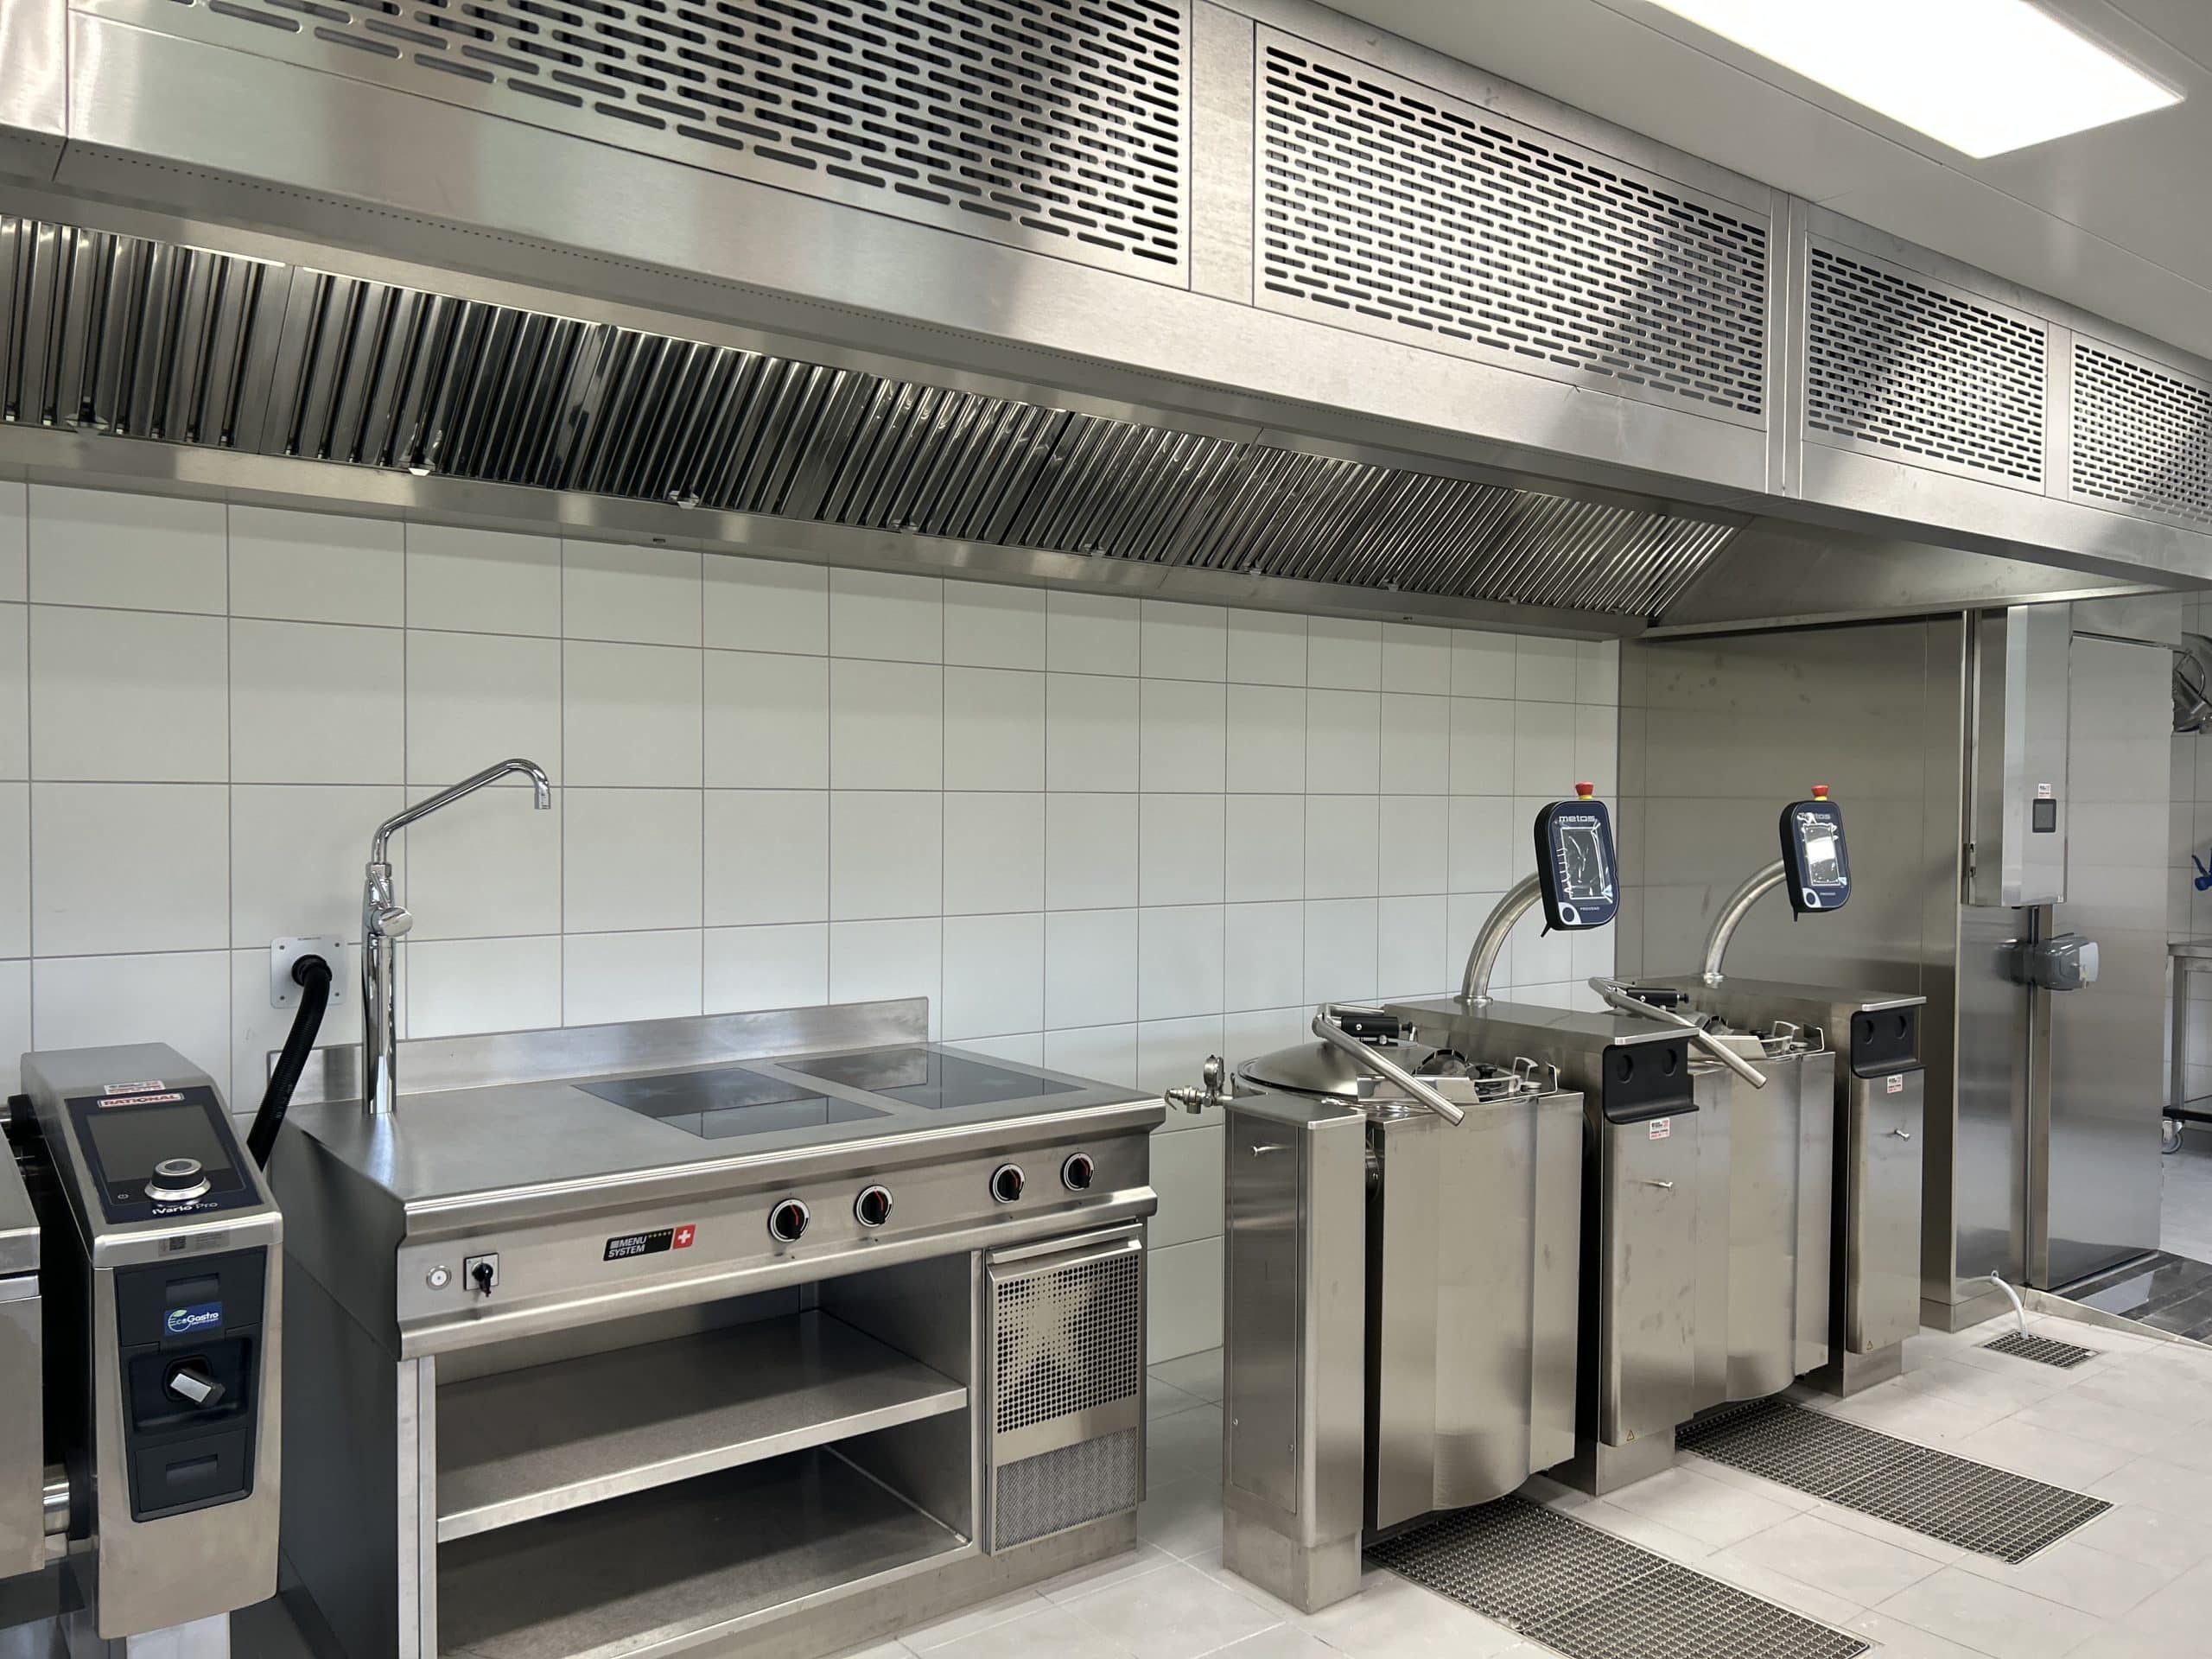 Cuisines Professionnelles suisse Genève Vaud matériel professionnel équipement pro ustensile dépannage restaurant hôtellerie